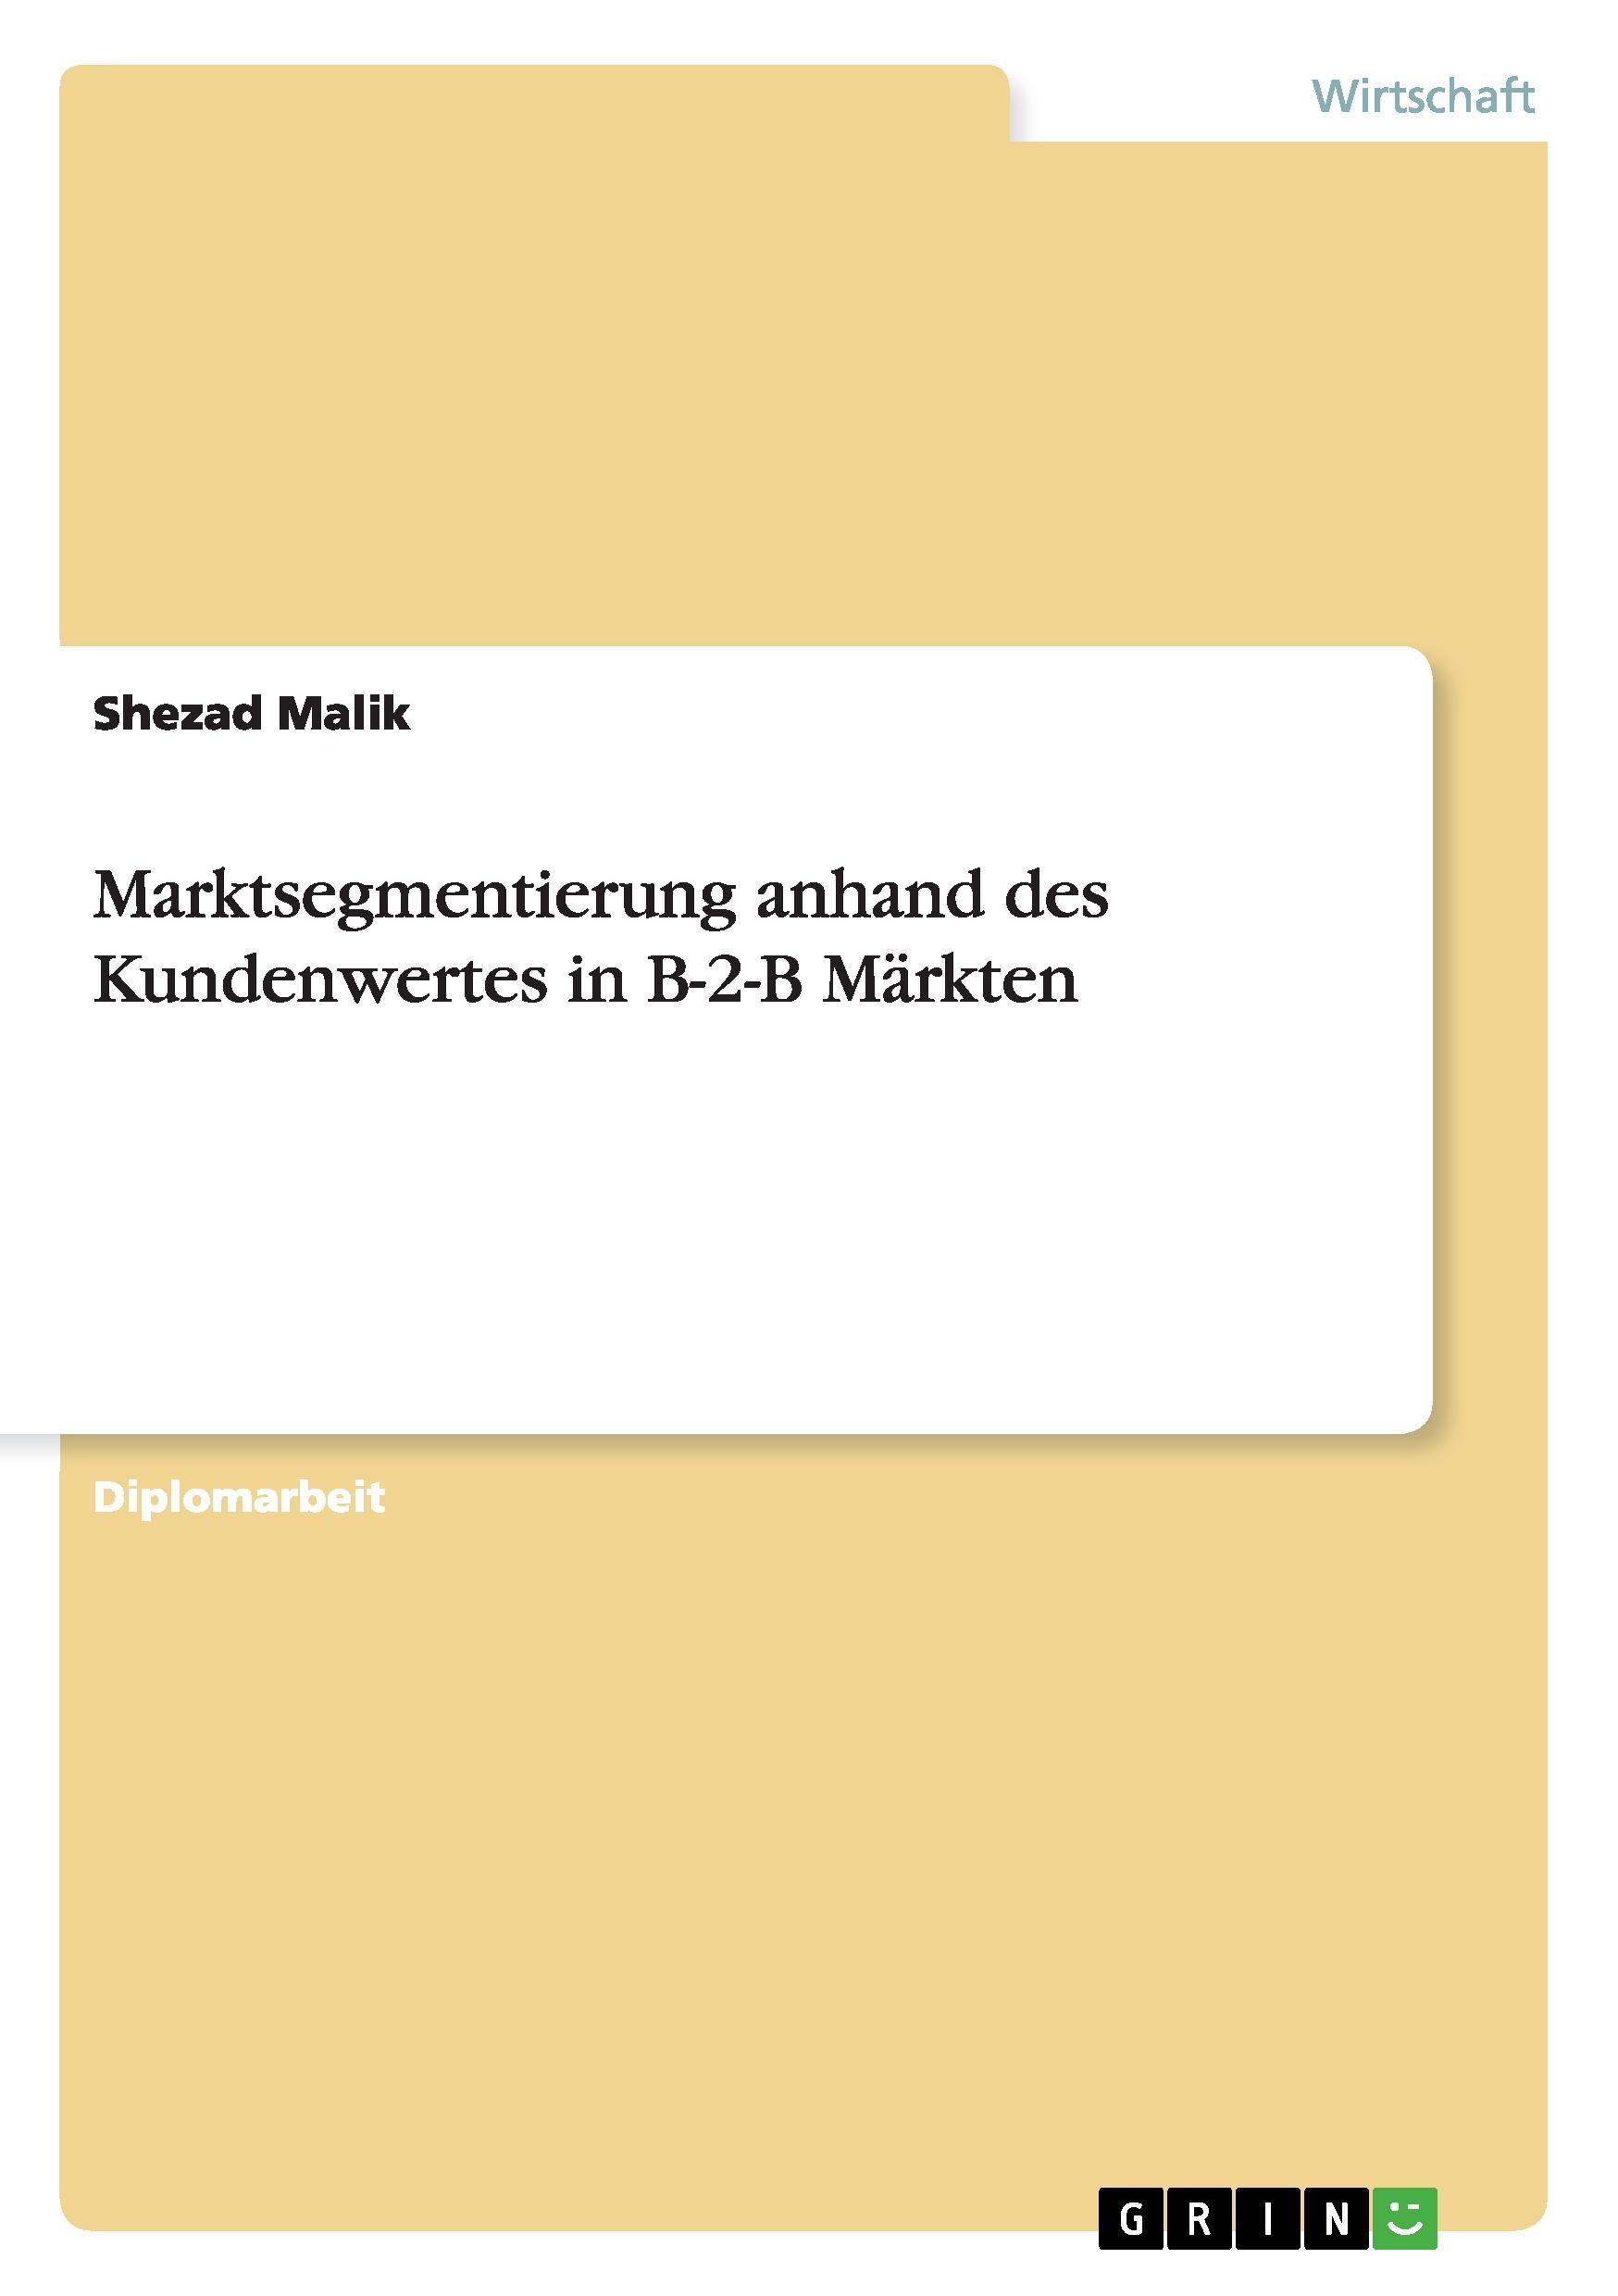 Marktsegmentierung anhand des Kundenwertes in B-2-B Maerkten - Malik, Shezad